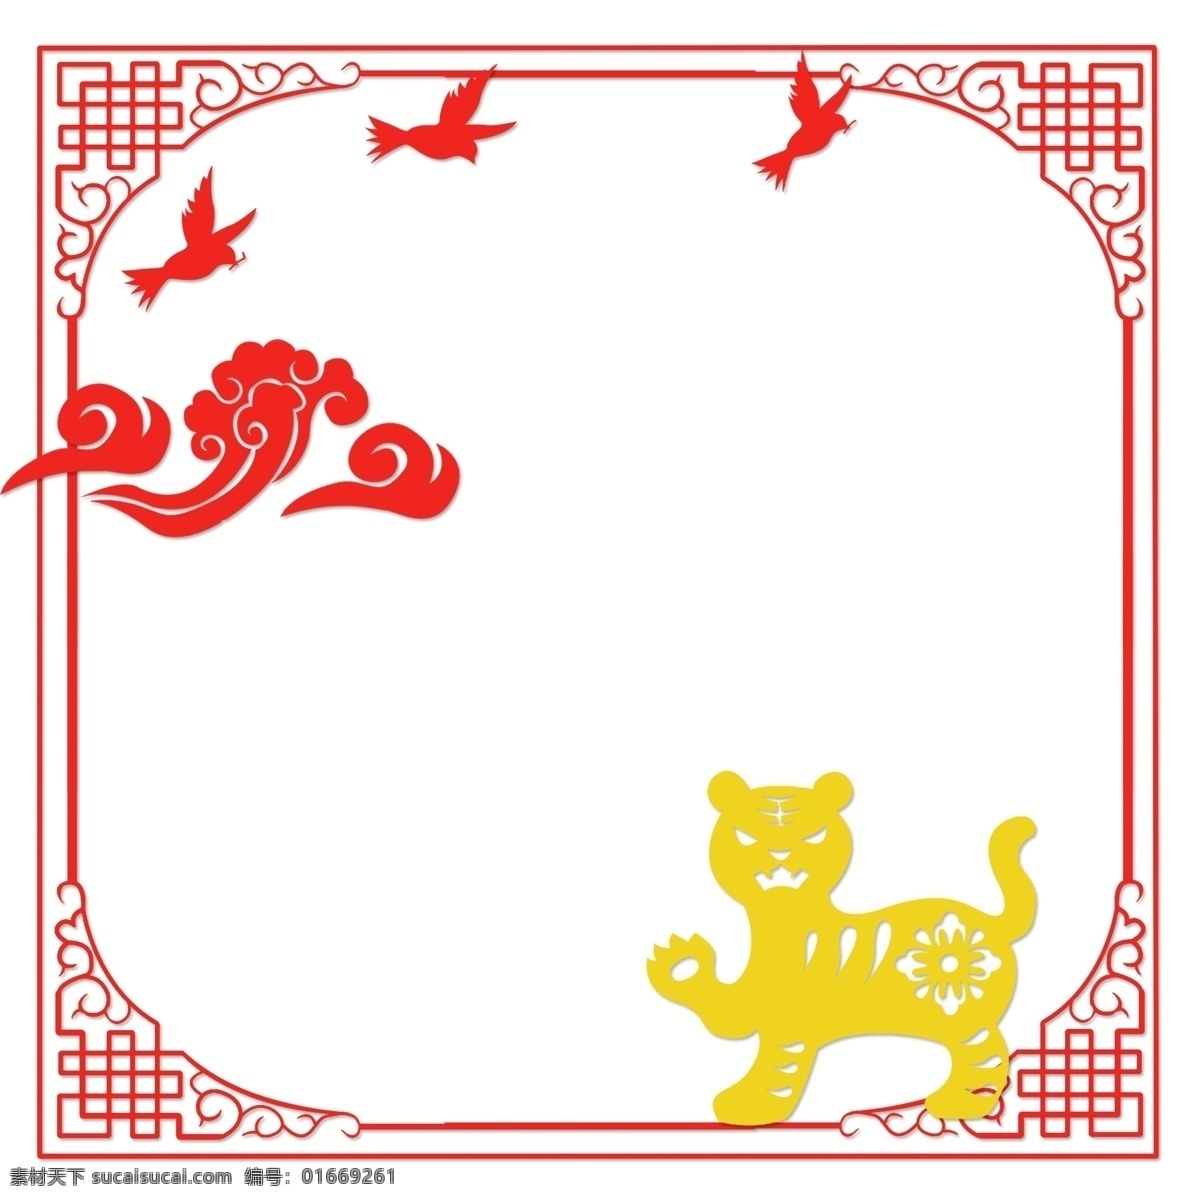 中国 风 古典 风格 扁平 边框 矢量图 十二生肖 中国风 古典风格 简约 古风手绘 矢量套图 红色 黄色 古风 虎